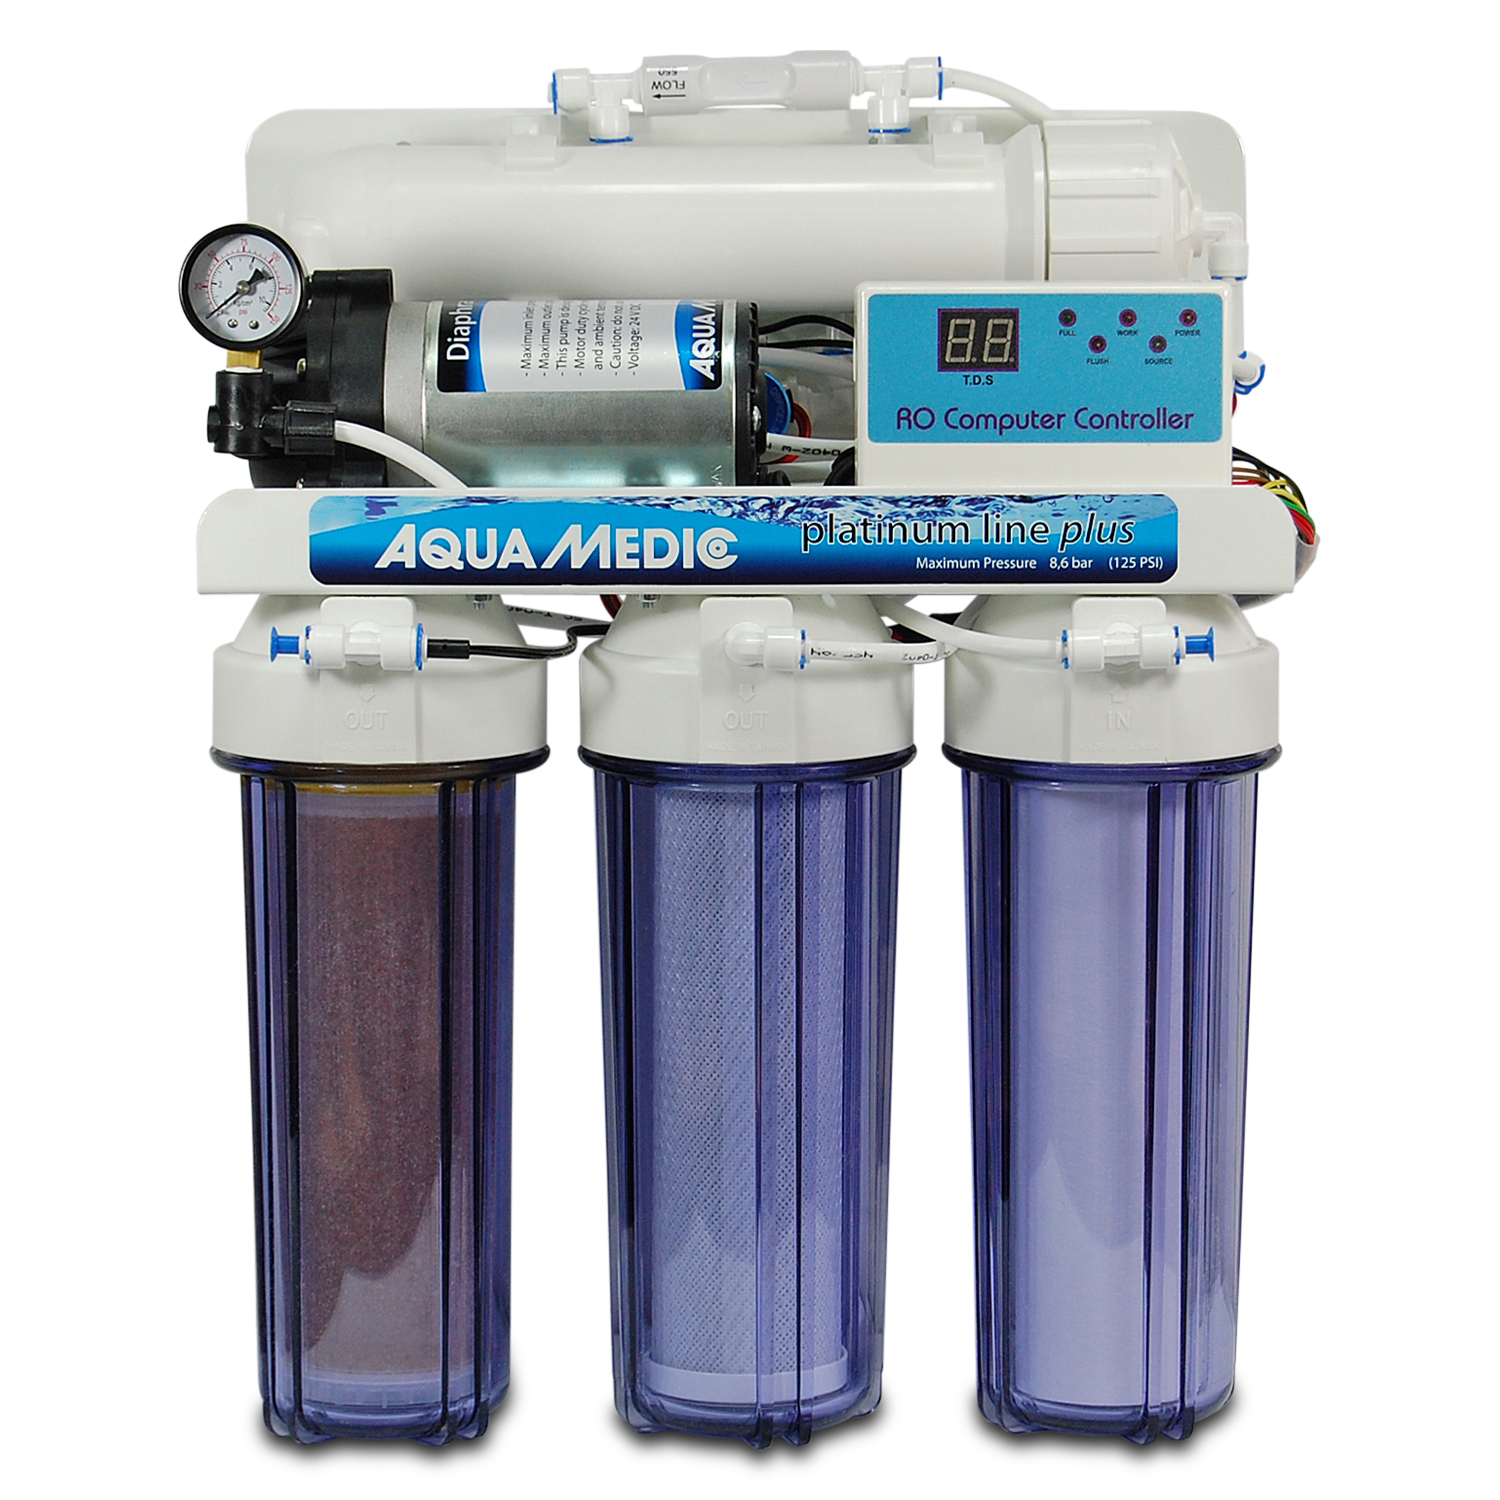 Aqua Medic platinum line plus 400l/Tag